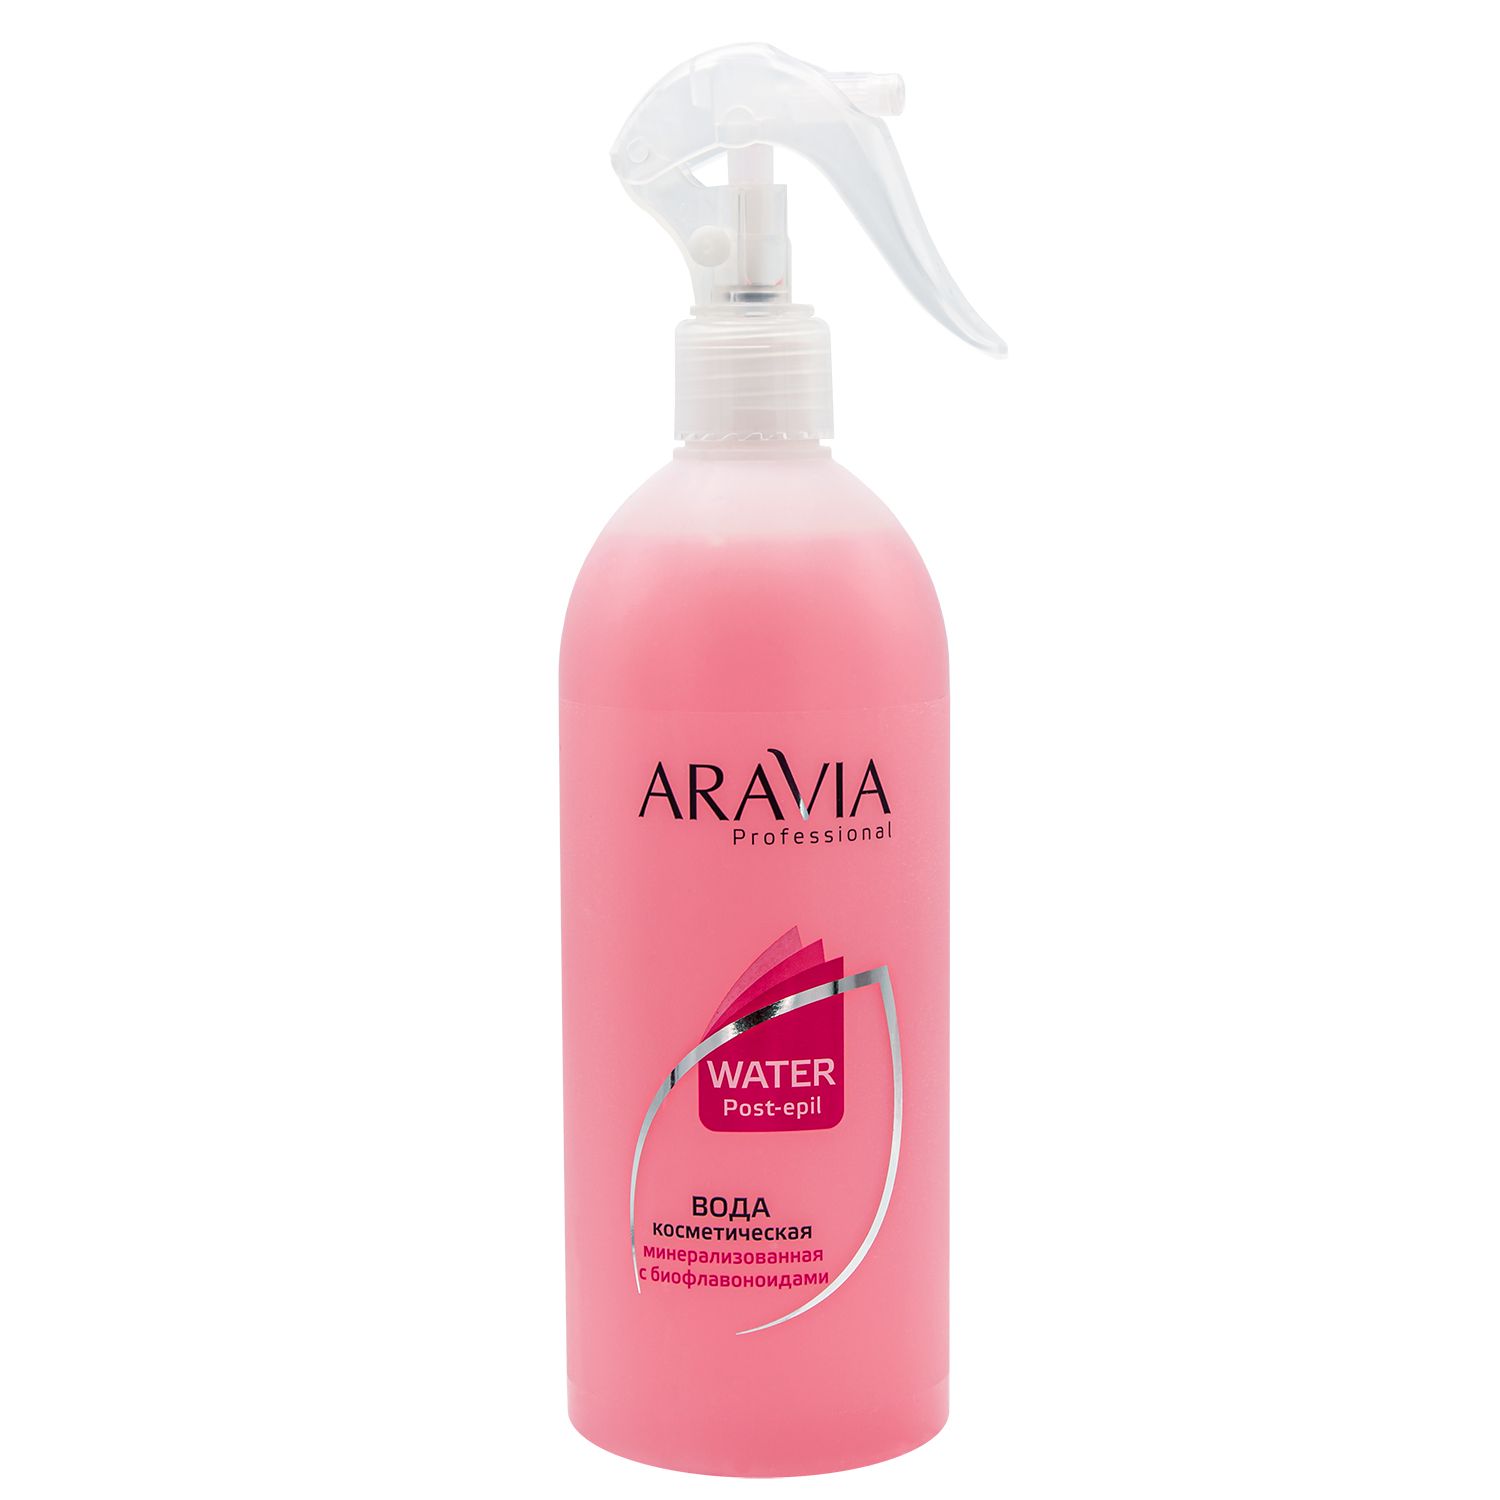 Aravia Professional Вода косметическая с биофлавоноидами, 500мл